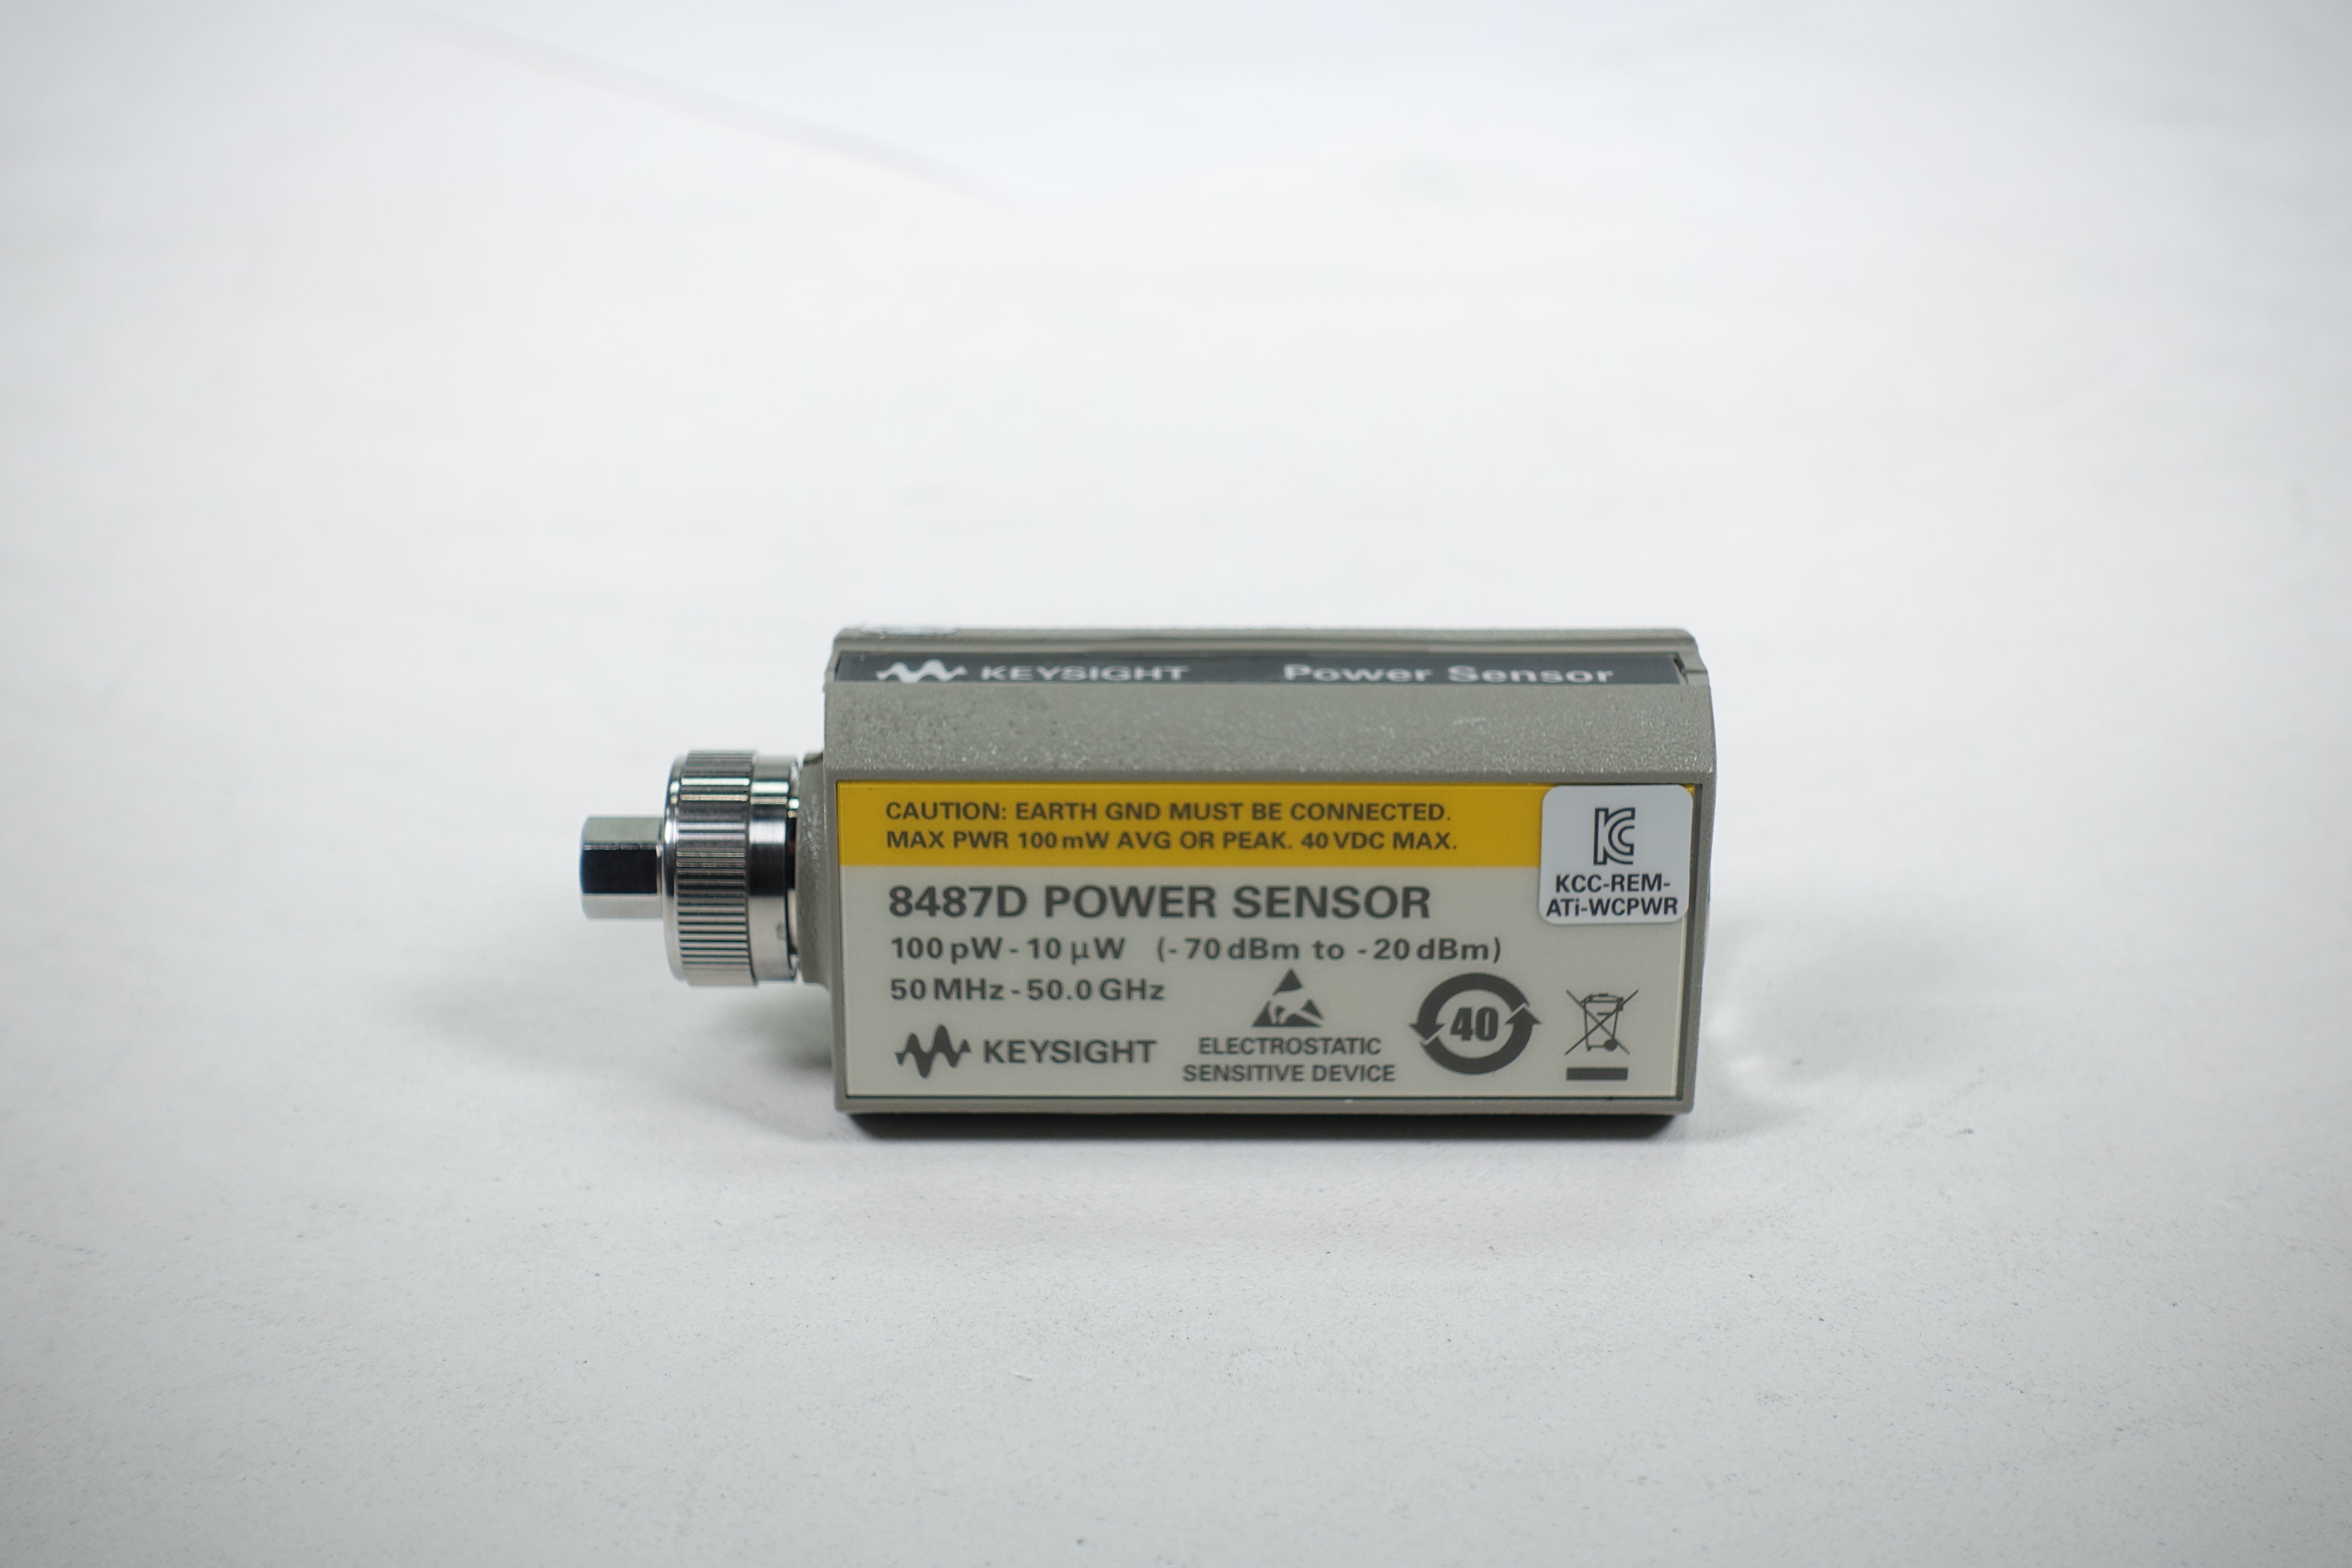 Keysight 8487D Diode Power Sensor / 50 MHz to 50 GHz / -70 to -20 dBm